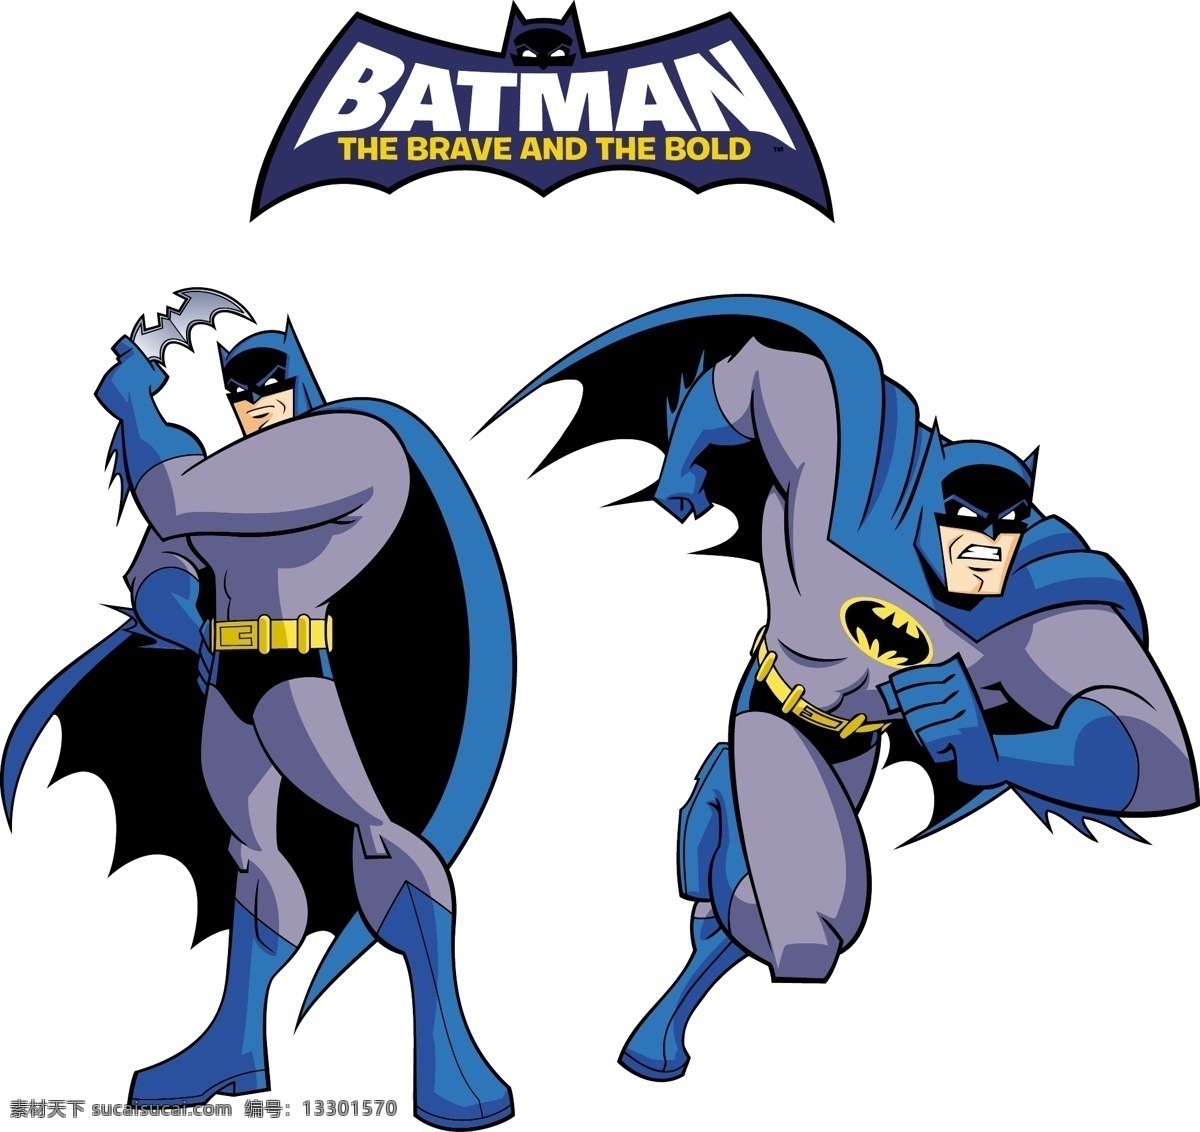 卡通 蝙蝠侠 矢量 欧美 英雄 超人 动画角色 动画 矢量图 卡通漫画 动漫动画 动漫人物